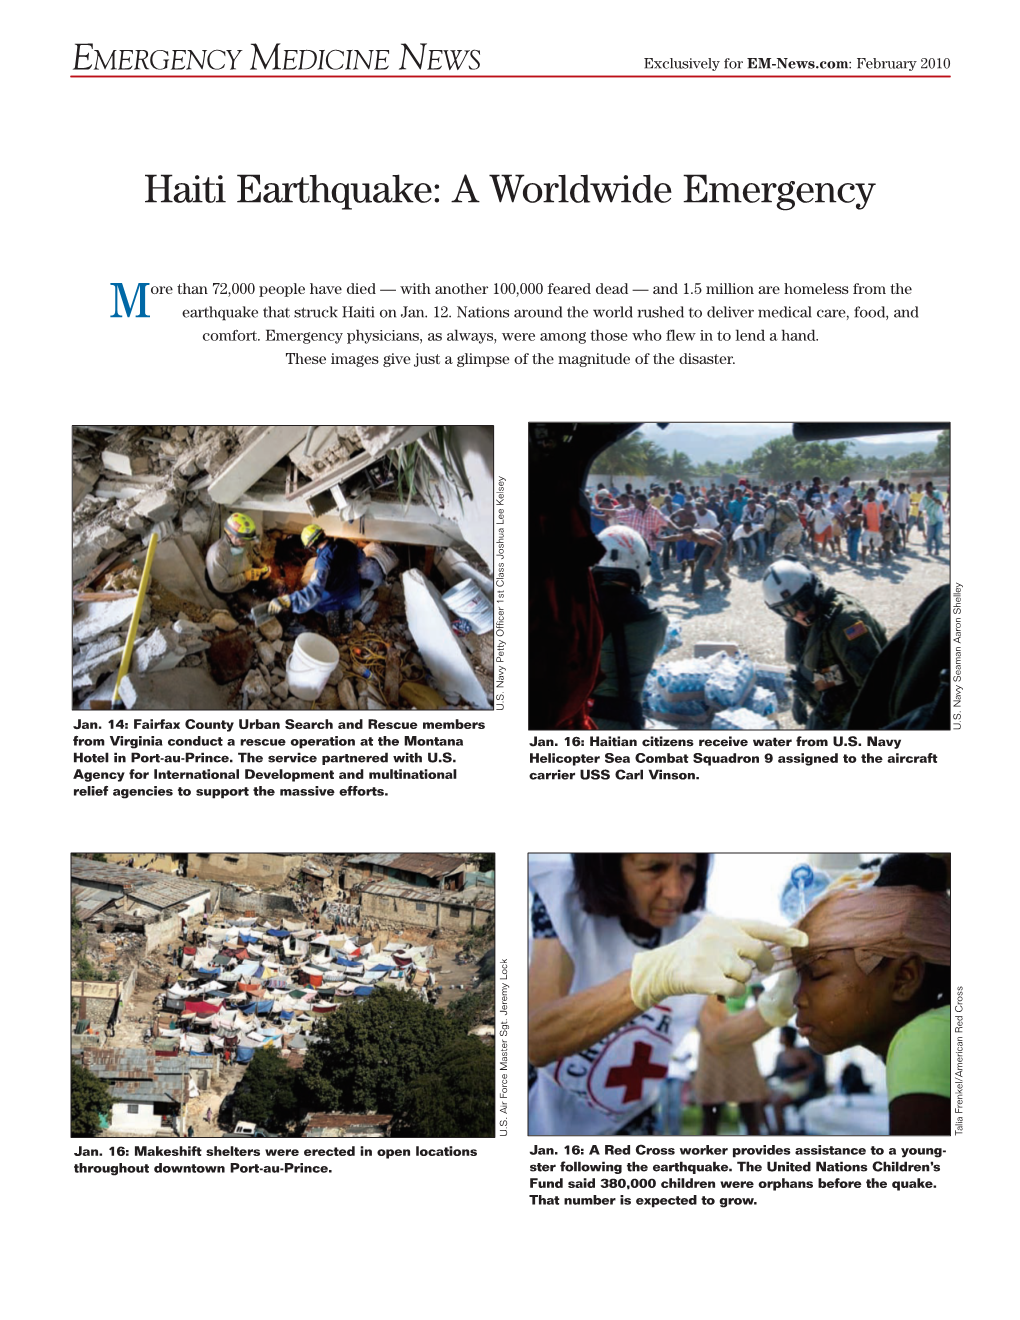 Haiti Earthquake: a Worldwide Emergency